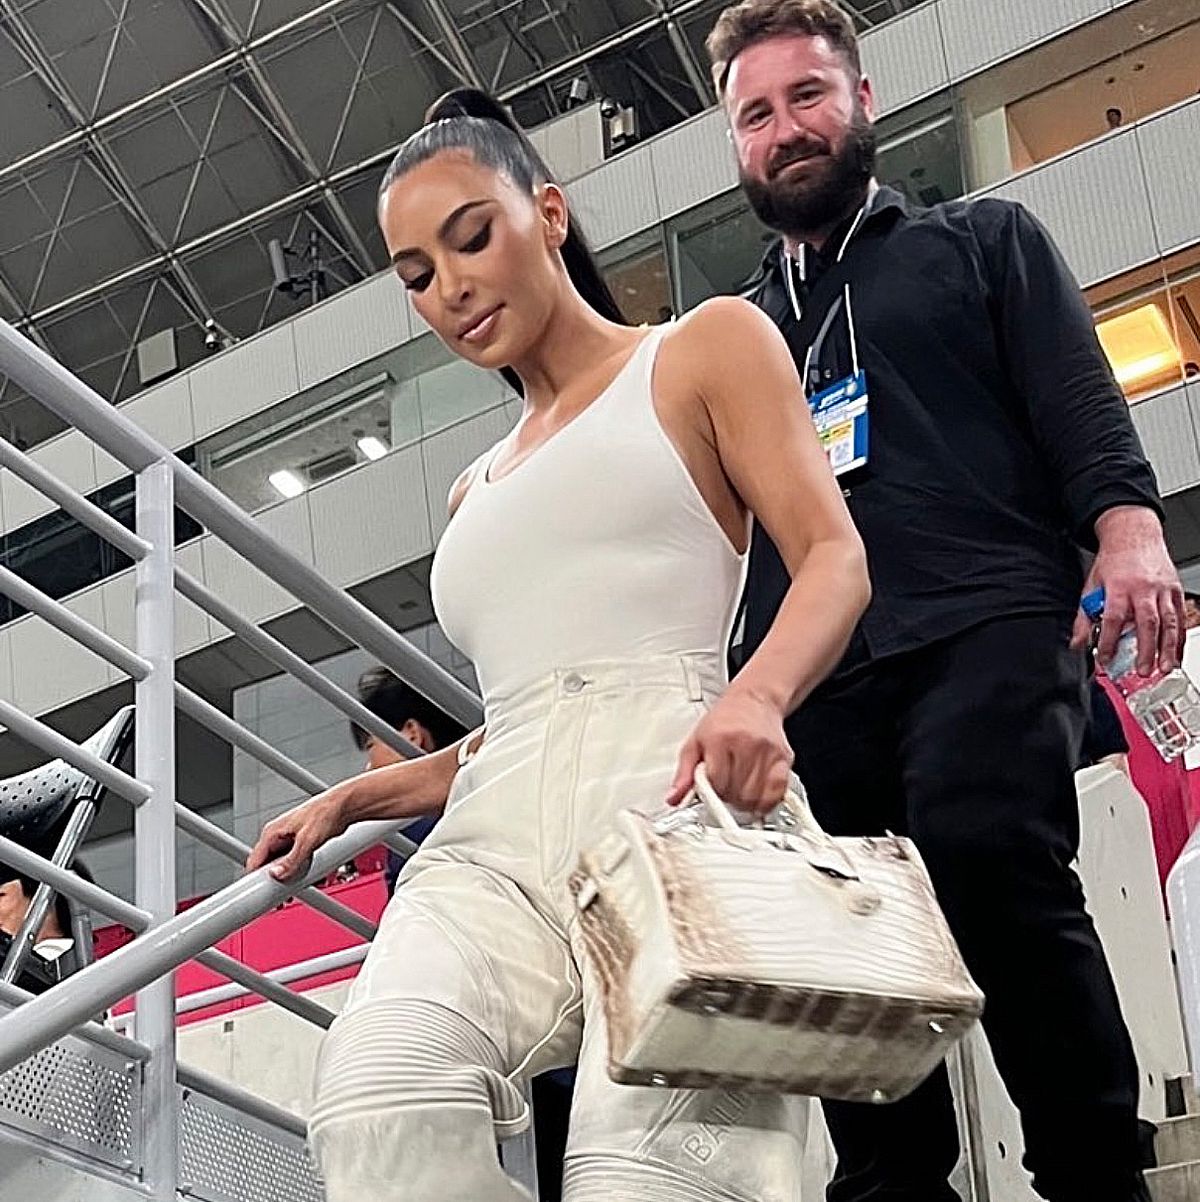 Kim Kardashian slammed for charging fans $109K for her 'ugly' used Hermes  purse despite her billionaire status